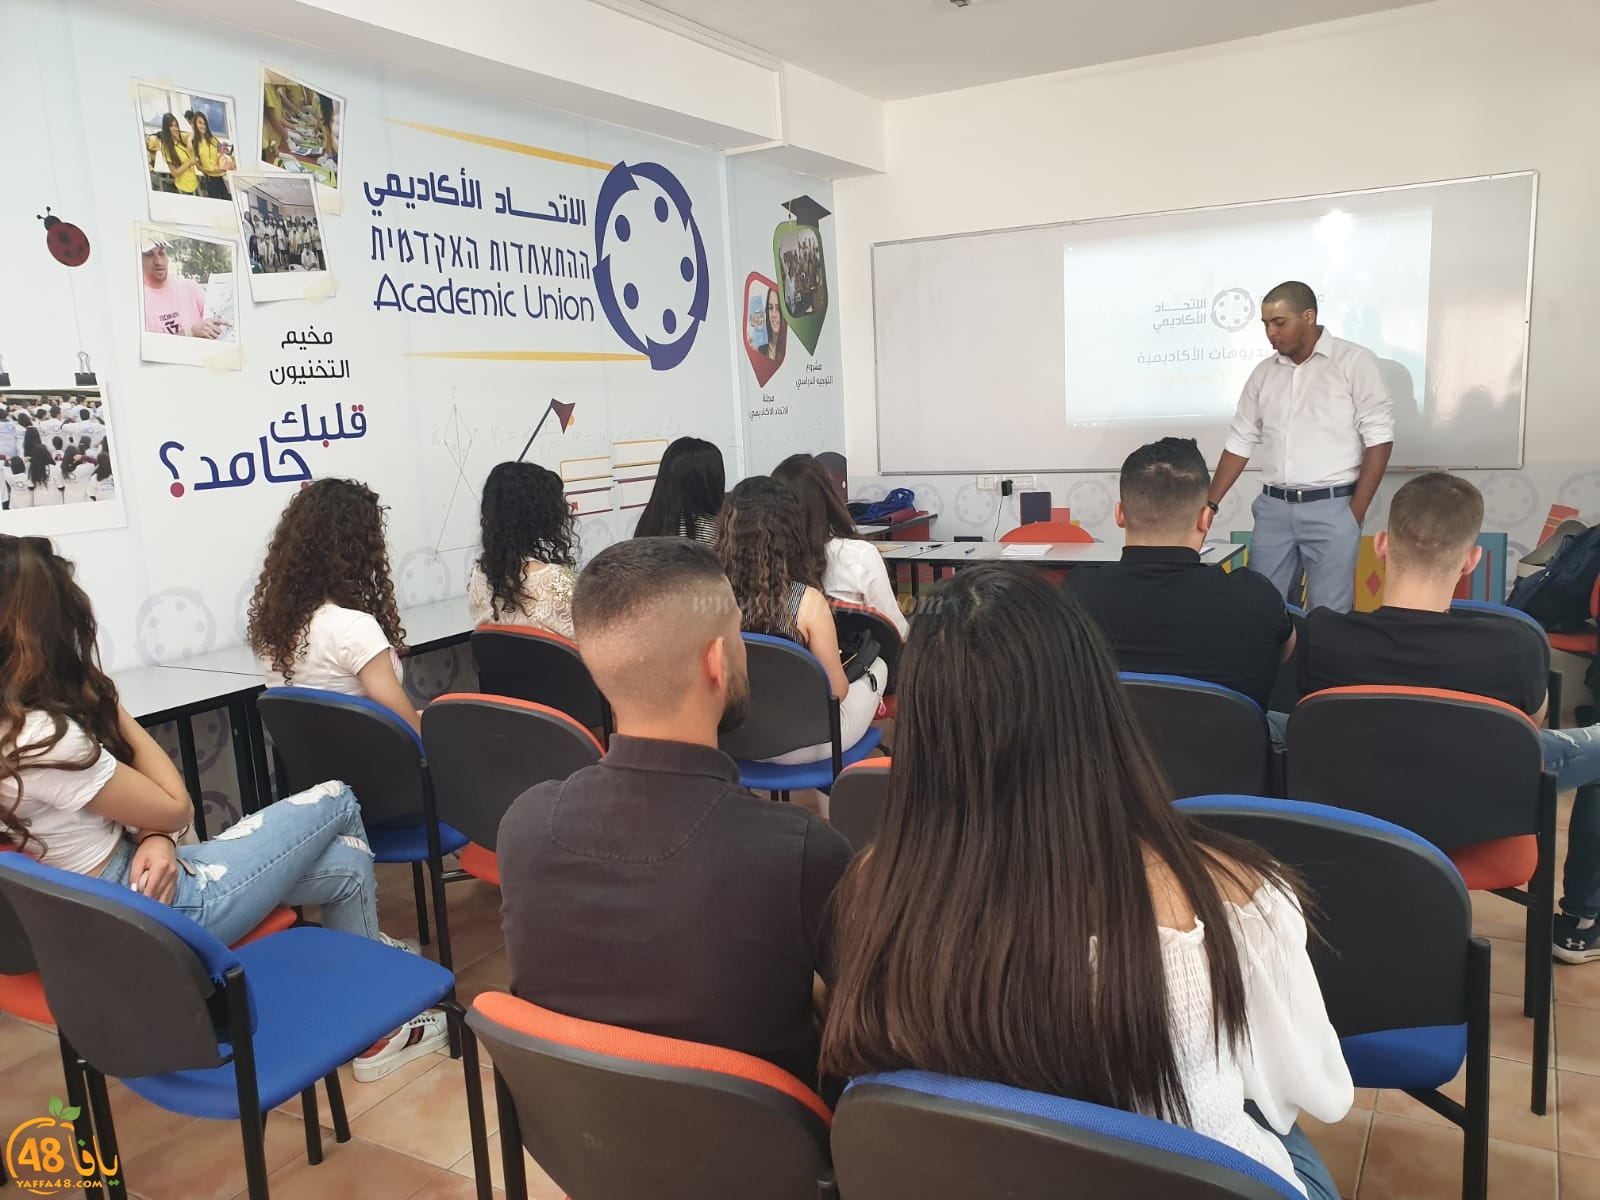 الكلية الأكاديمية تُنظم يوماً مفتوحاً في الناصرة